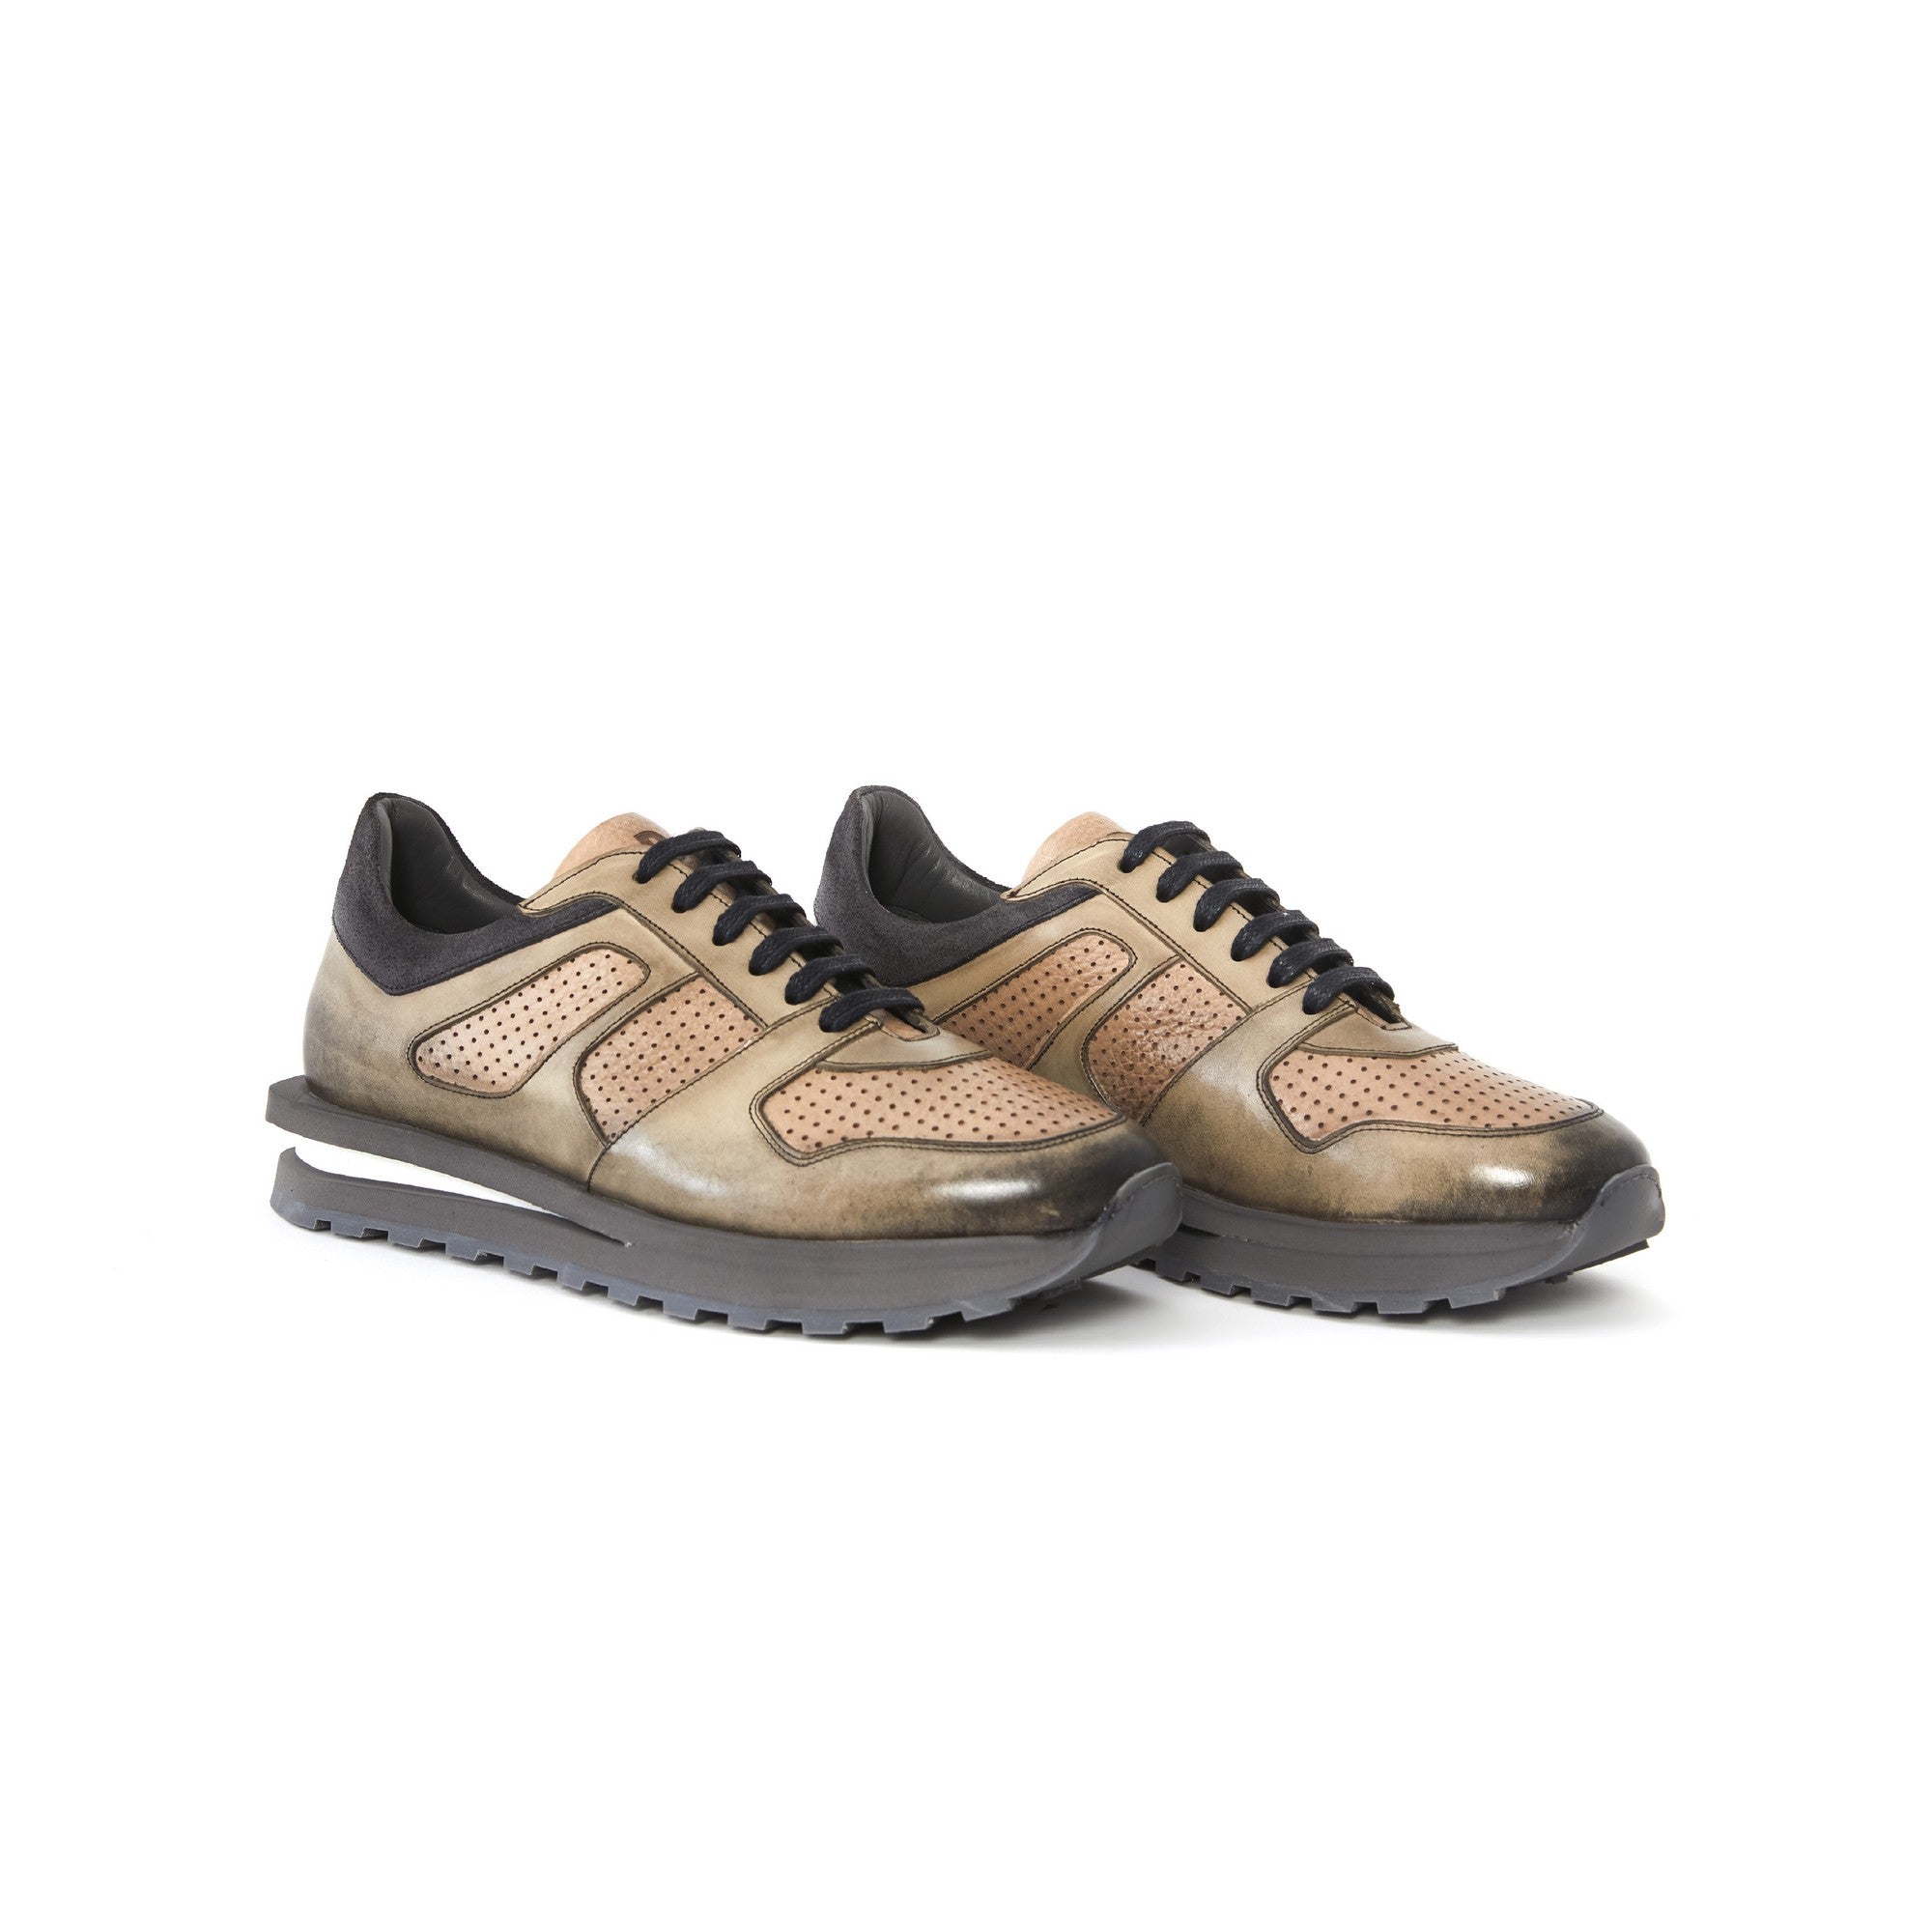 Men's Calf Leather Handmade Sneakers M8013